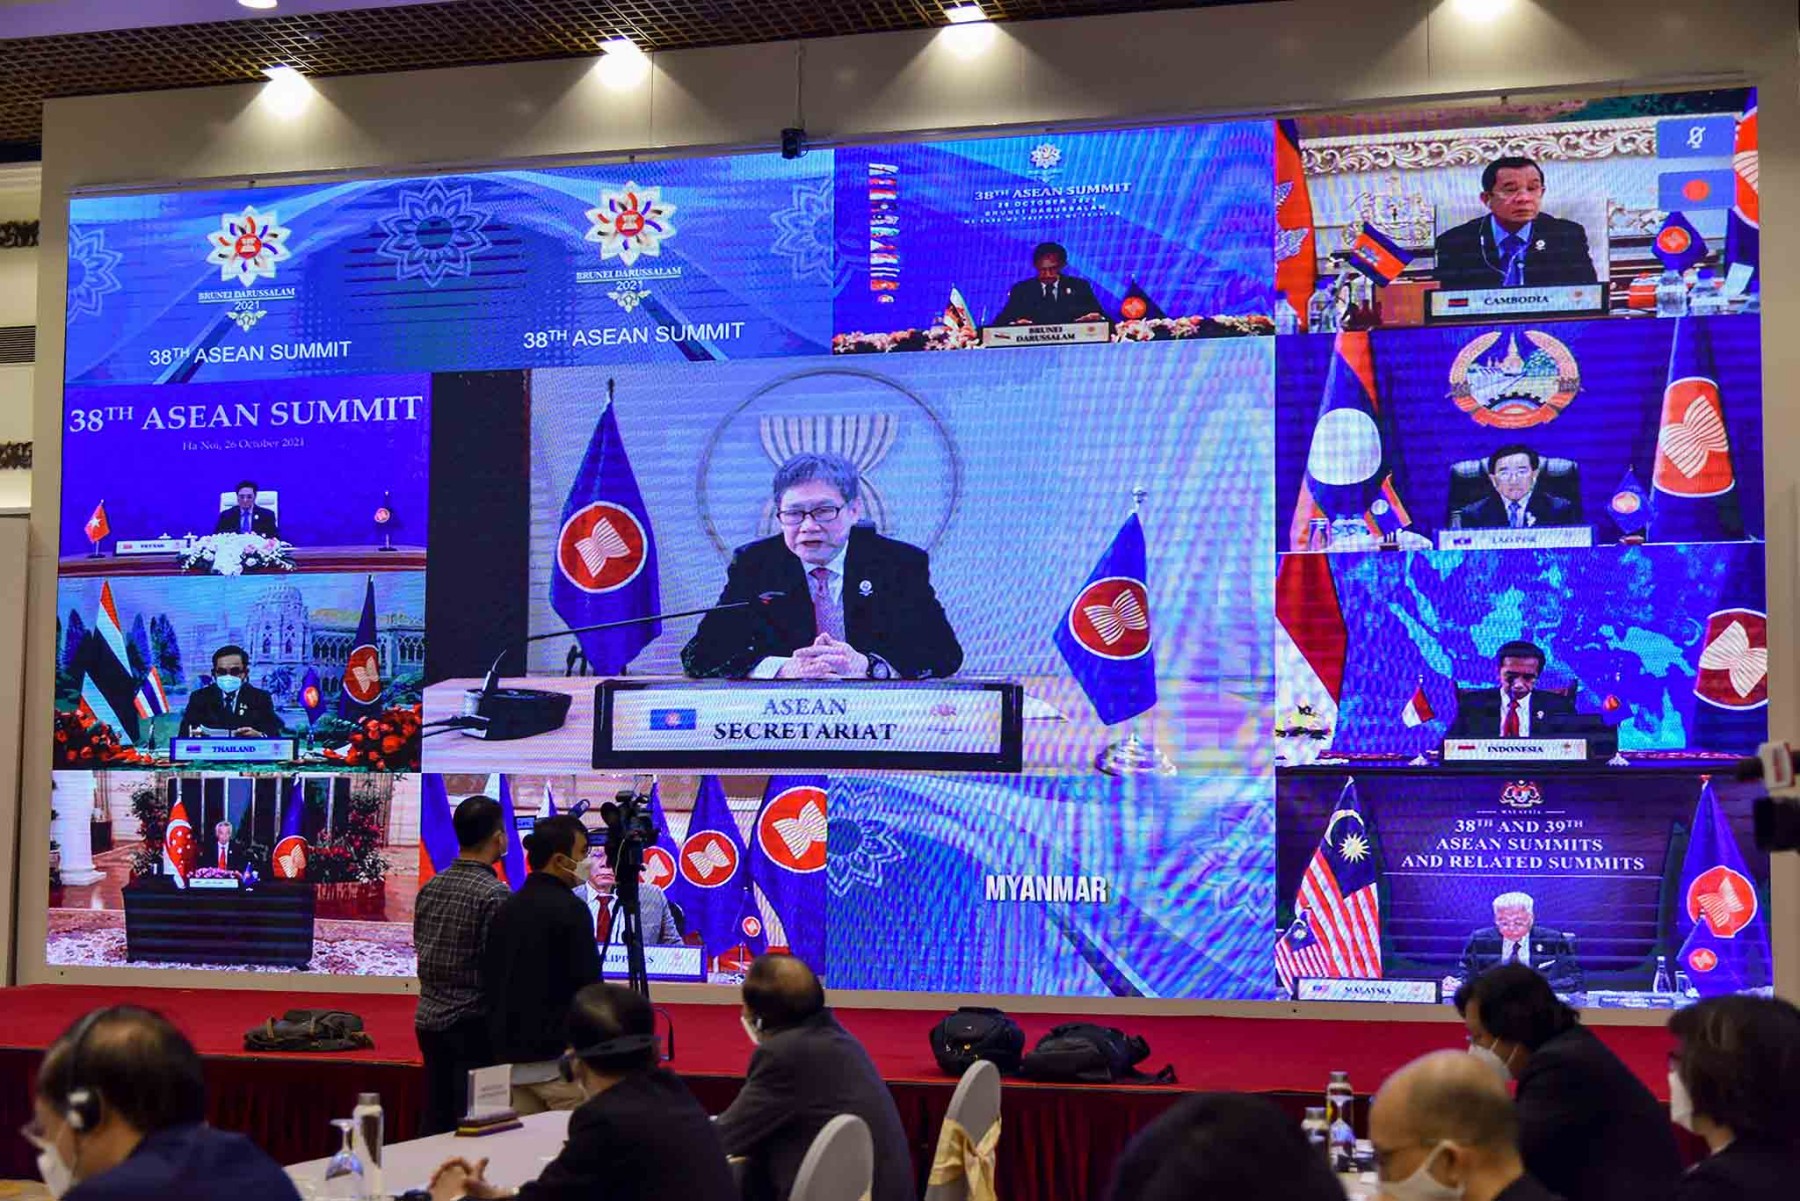 Thủ tướng đề nghị ASEAN định vị chỗ đứng mới trong thế giới đang tái định hình - Ảnh 2.